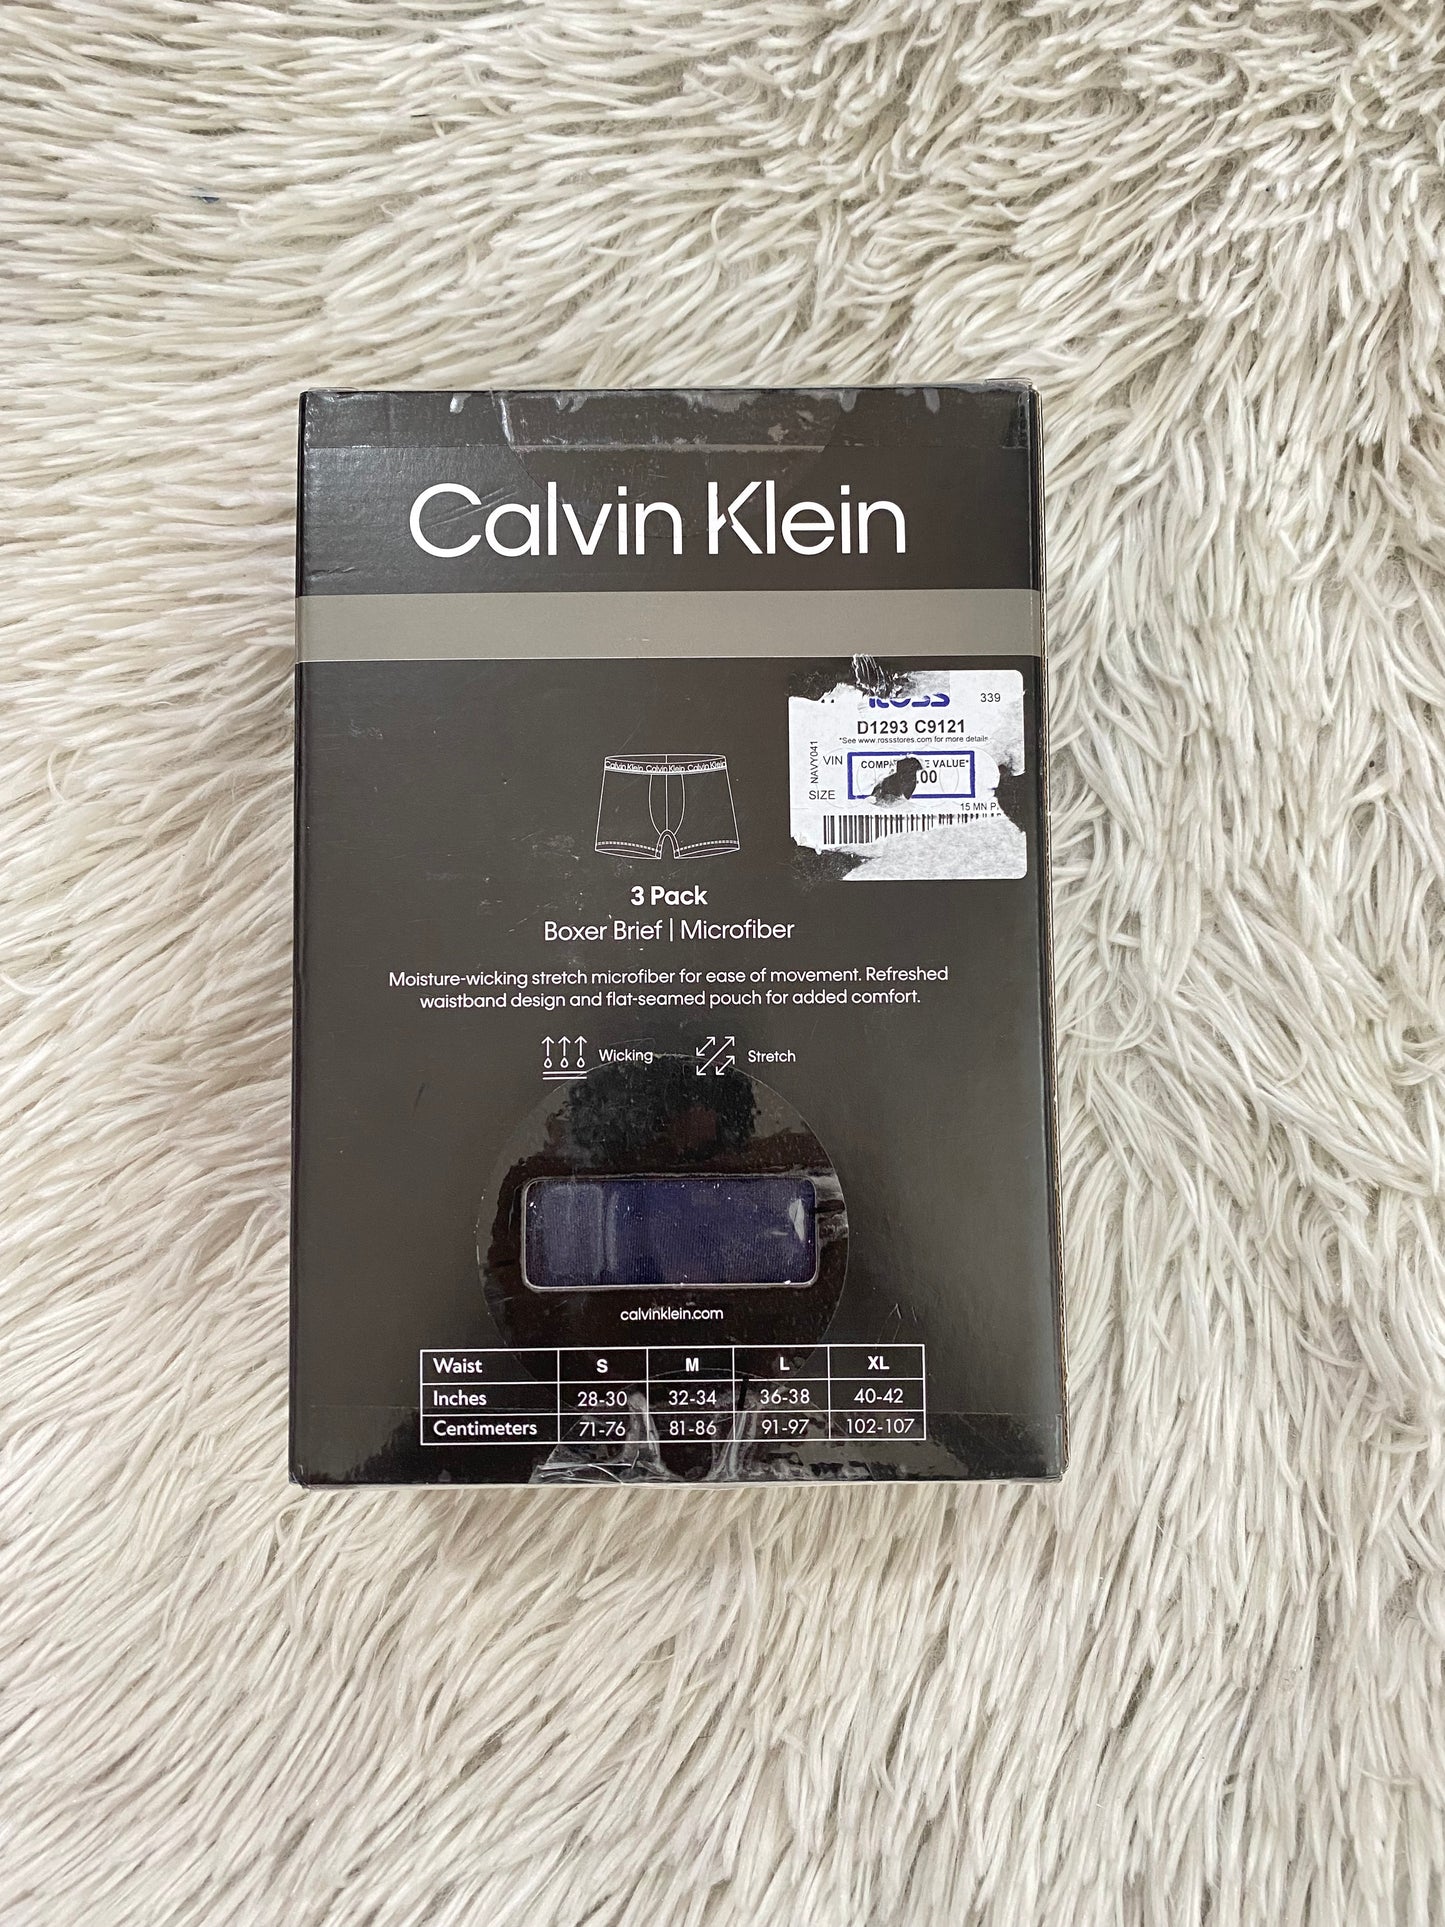 Boxer Calvin Klein original, pack de 3, en color negro y letras de la marca en blanco.